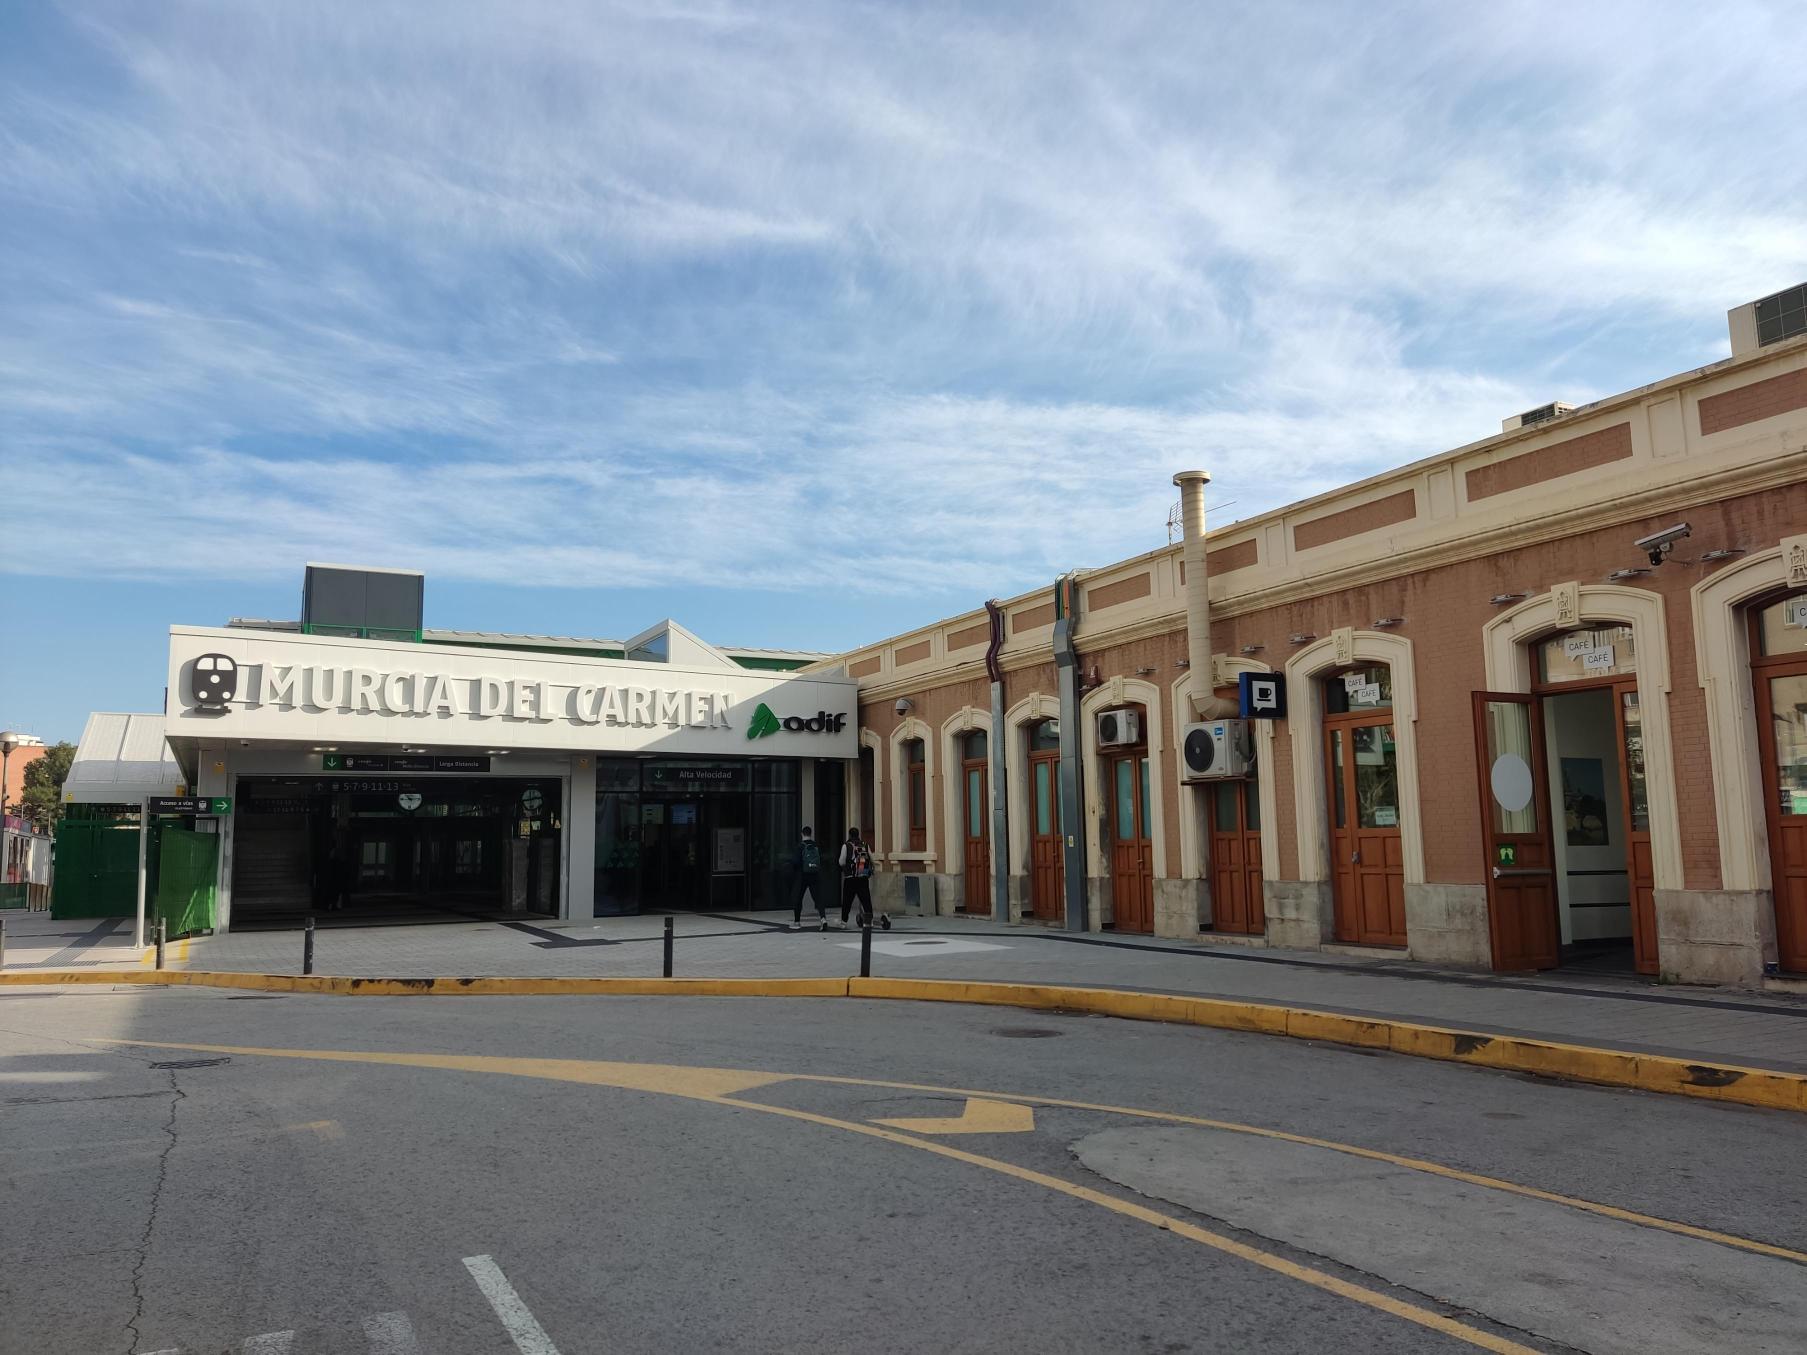 Estación Murcia del Carmen. Vista fachada principal